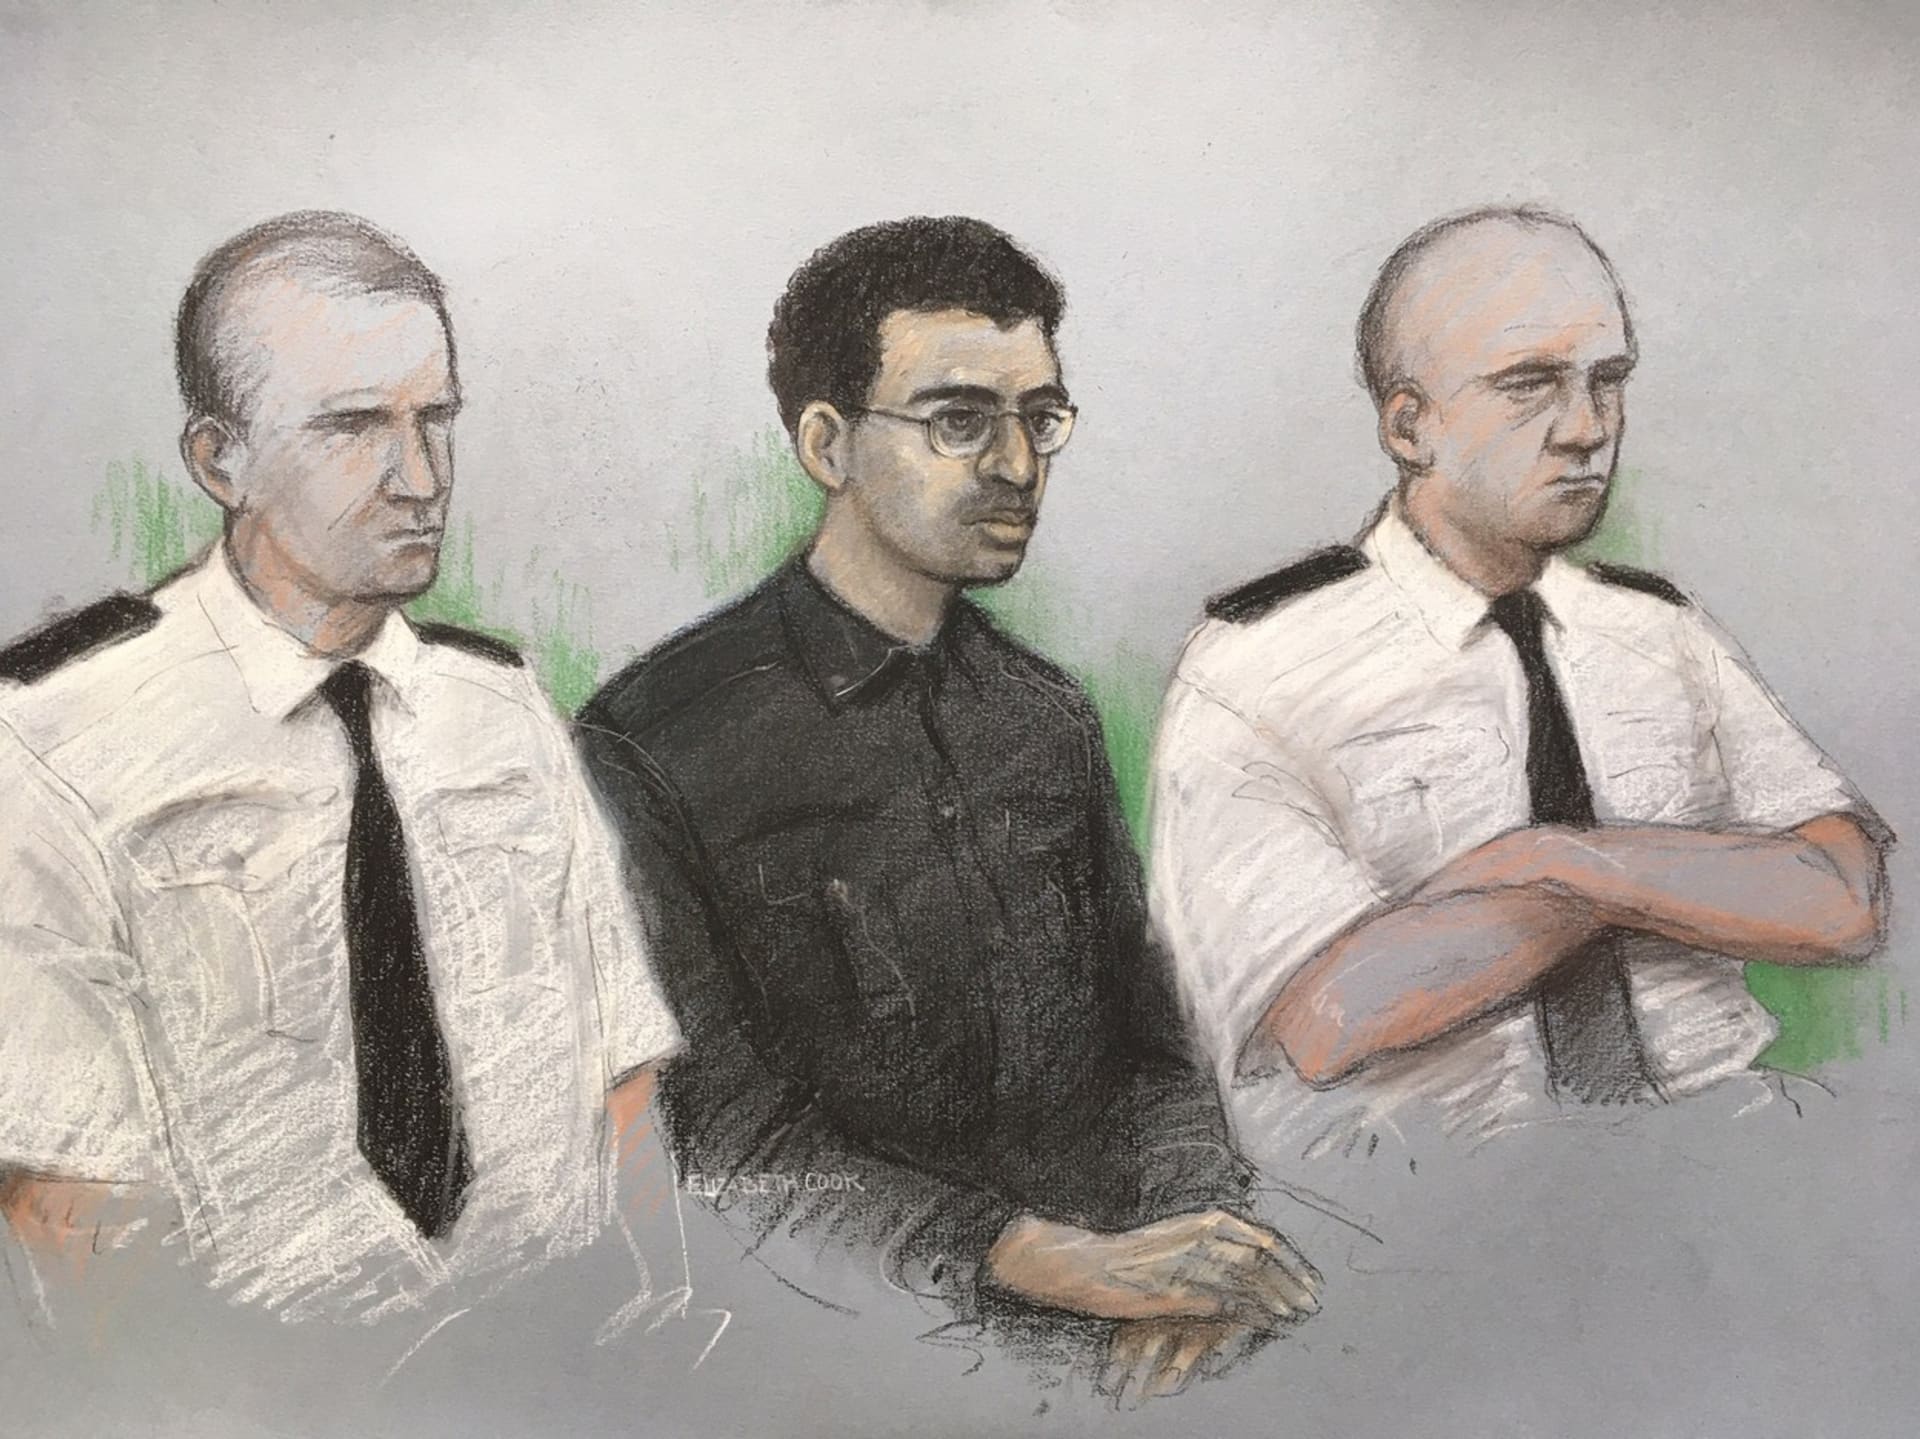 Skica ze soudního jednání v Londýně, autorka Elizabeth Cooková ztvárnila Hashema Abediho, bratra sebevražedného atentátníka, mezi dvěma policisty.